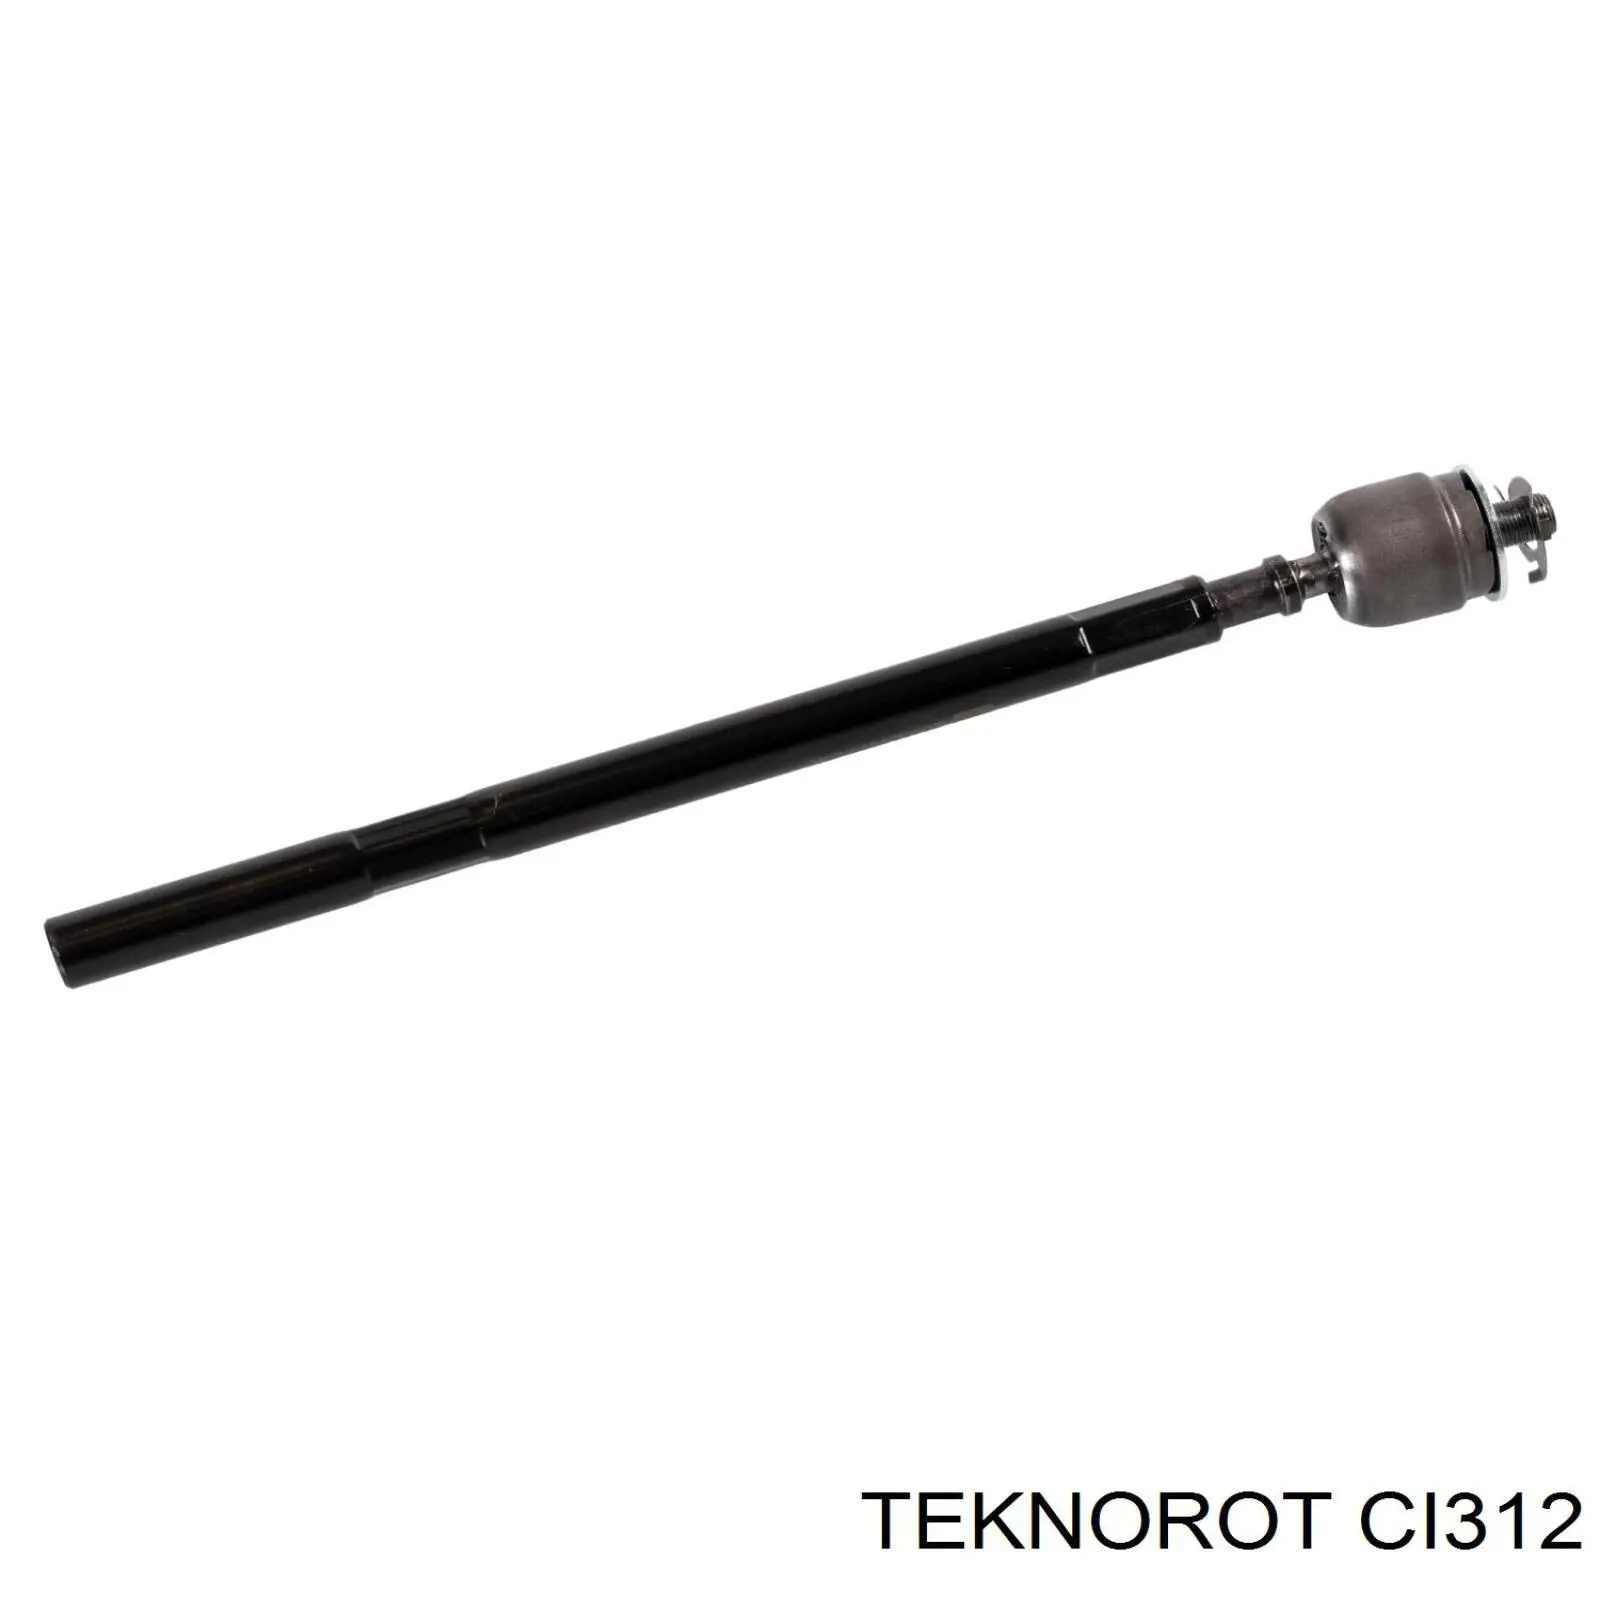 CI312 Teknorot soporte de barra estabilizadora delantera